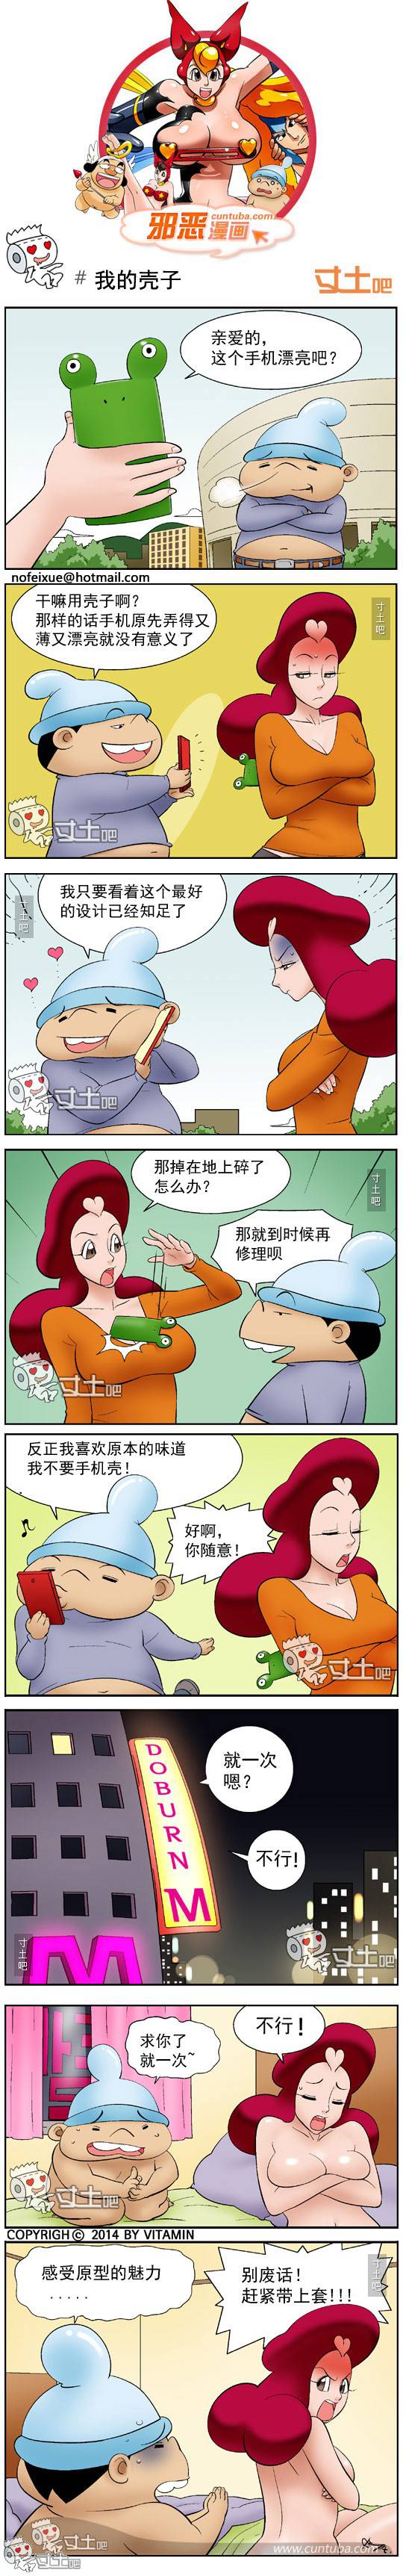 邪恶漫画爆笑囧图第277刊：独一无二的按摩器